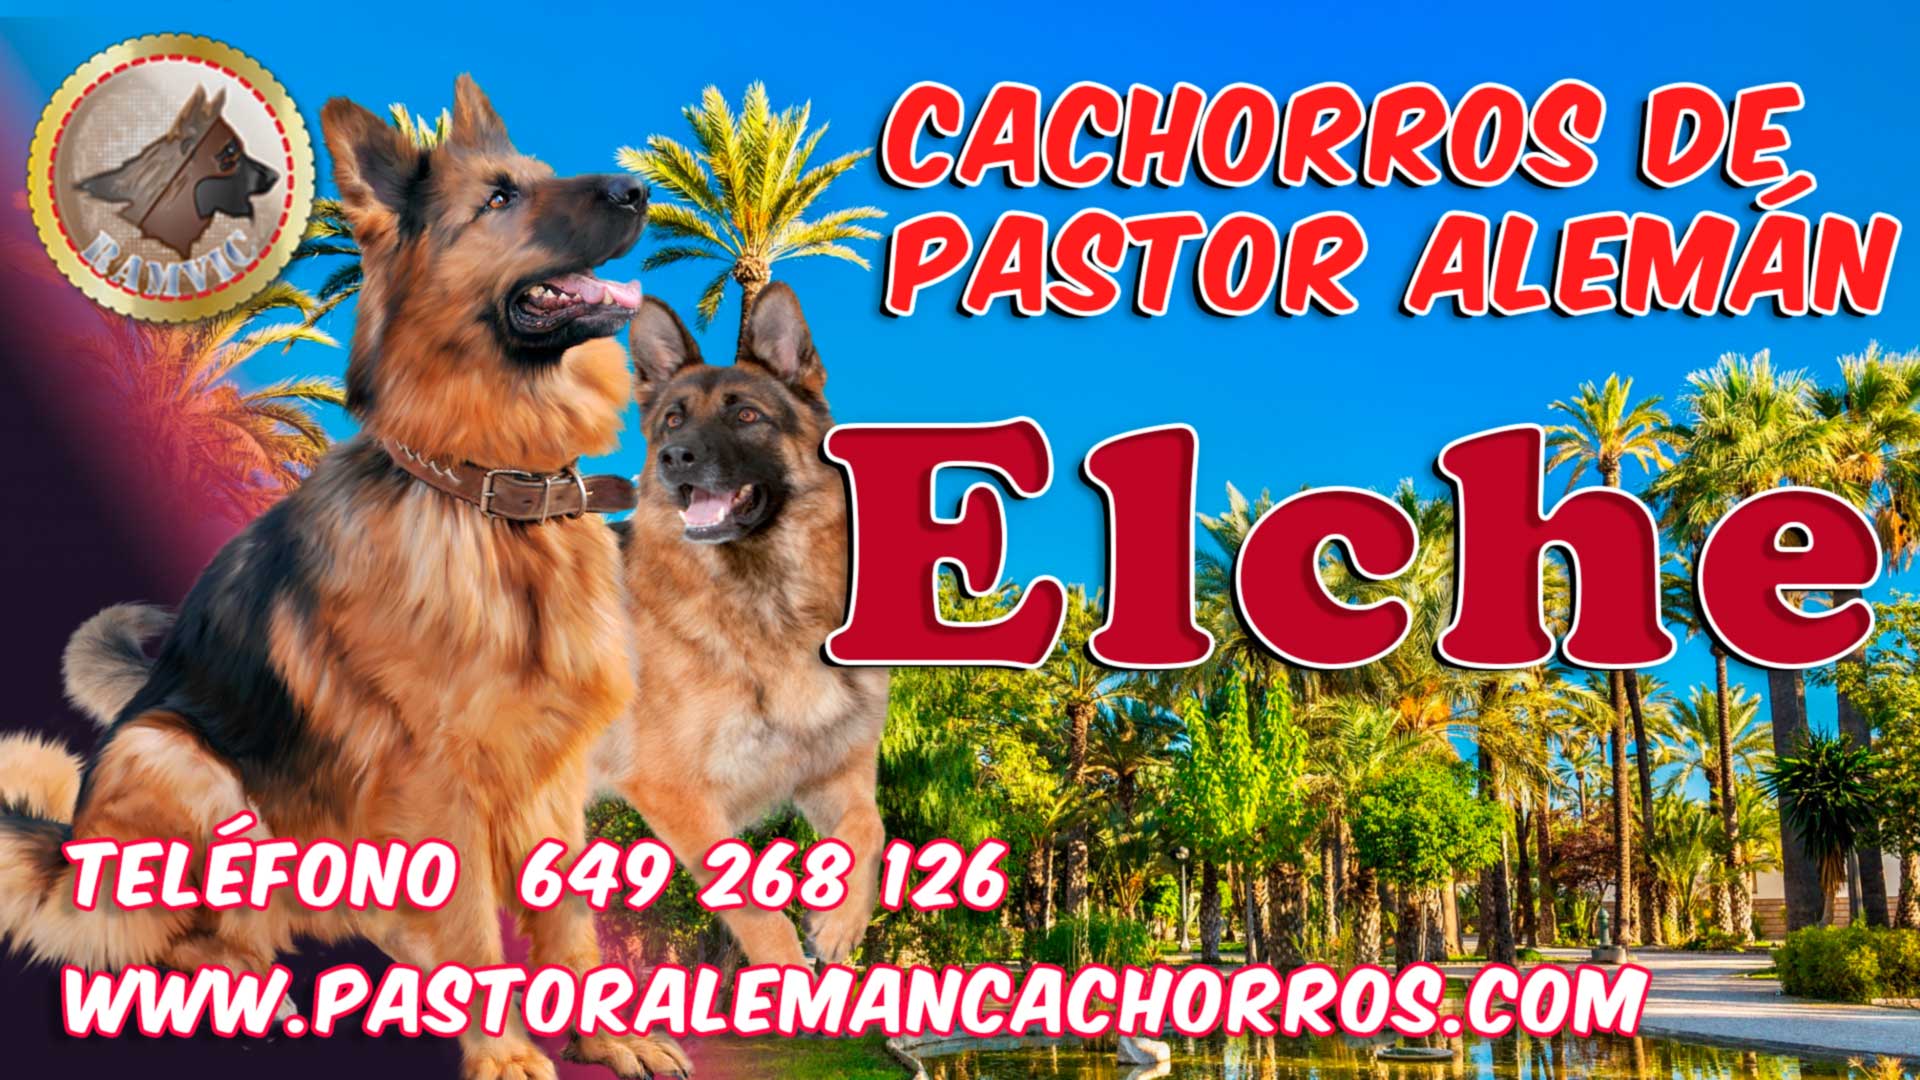 Comprar cachorros de Pastor Alemán en Elche